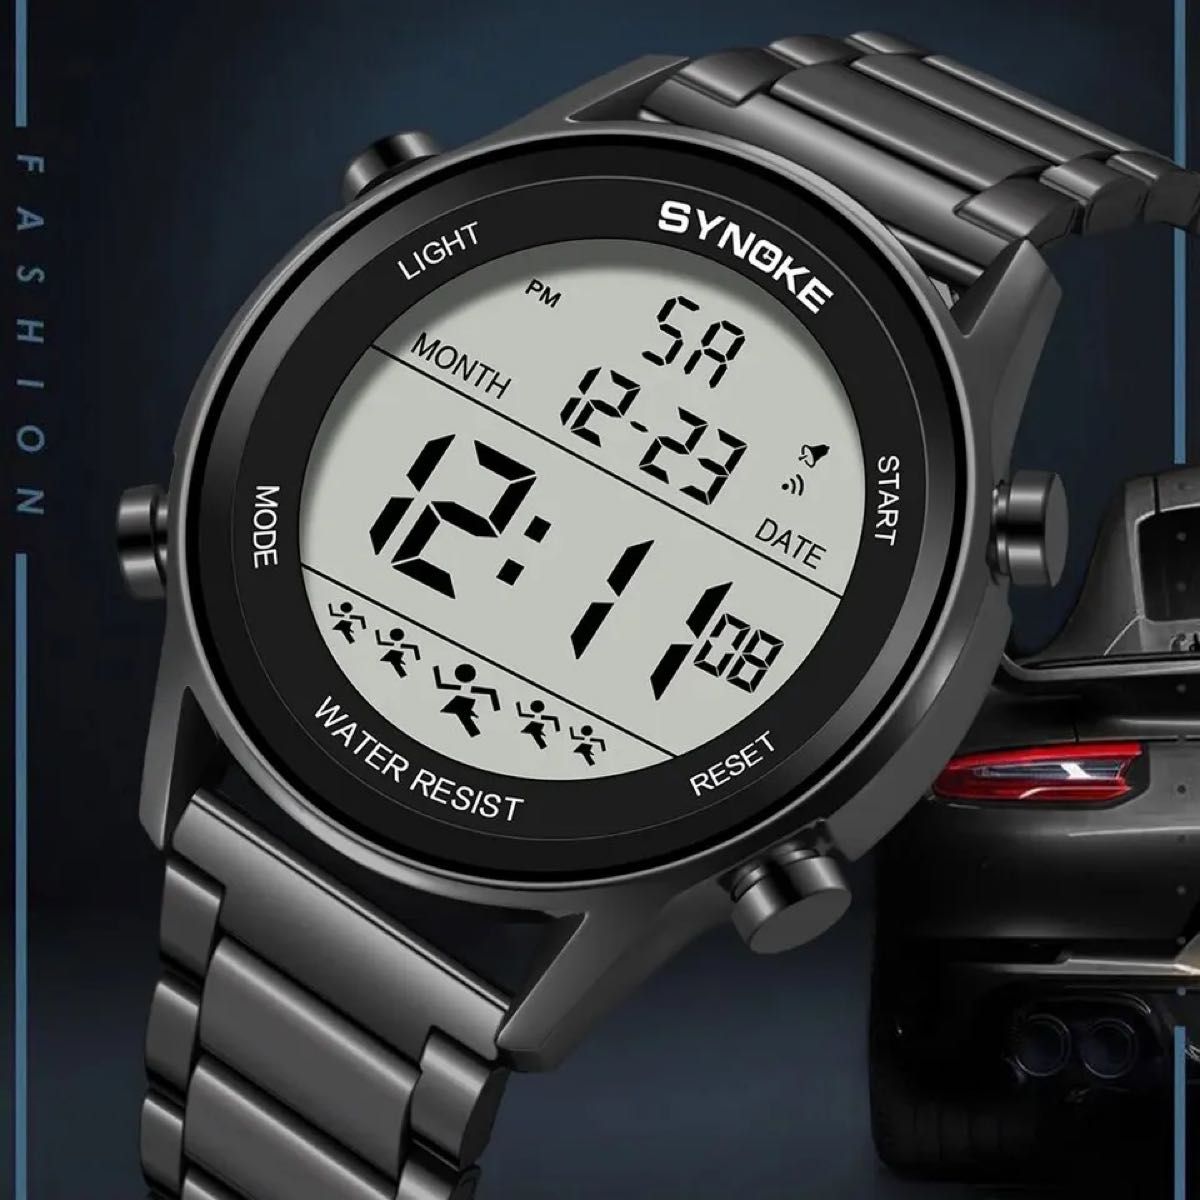 新品 SYNOKEスポーツデジタル 防水 デジタルストップウォッチ メンズ腕時計 9825 メタルストラップ ブラック